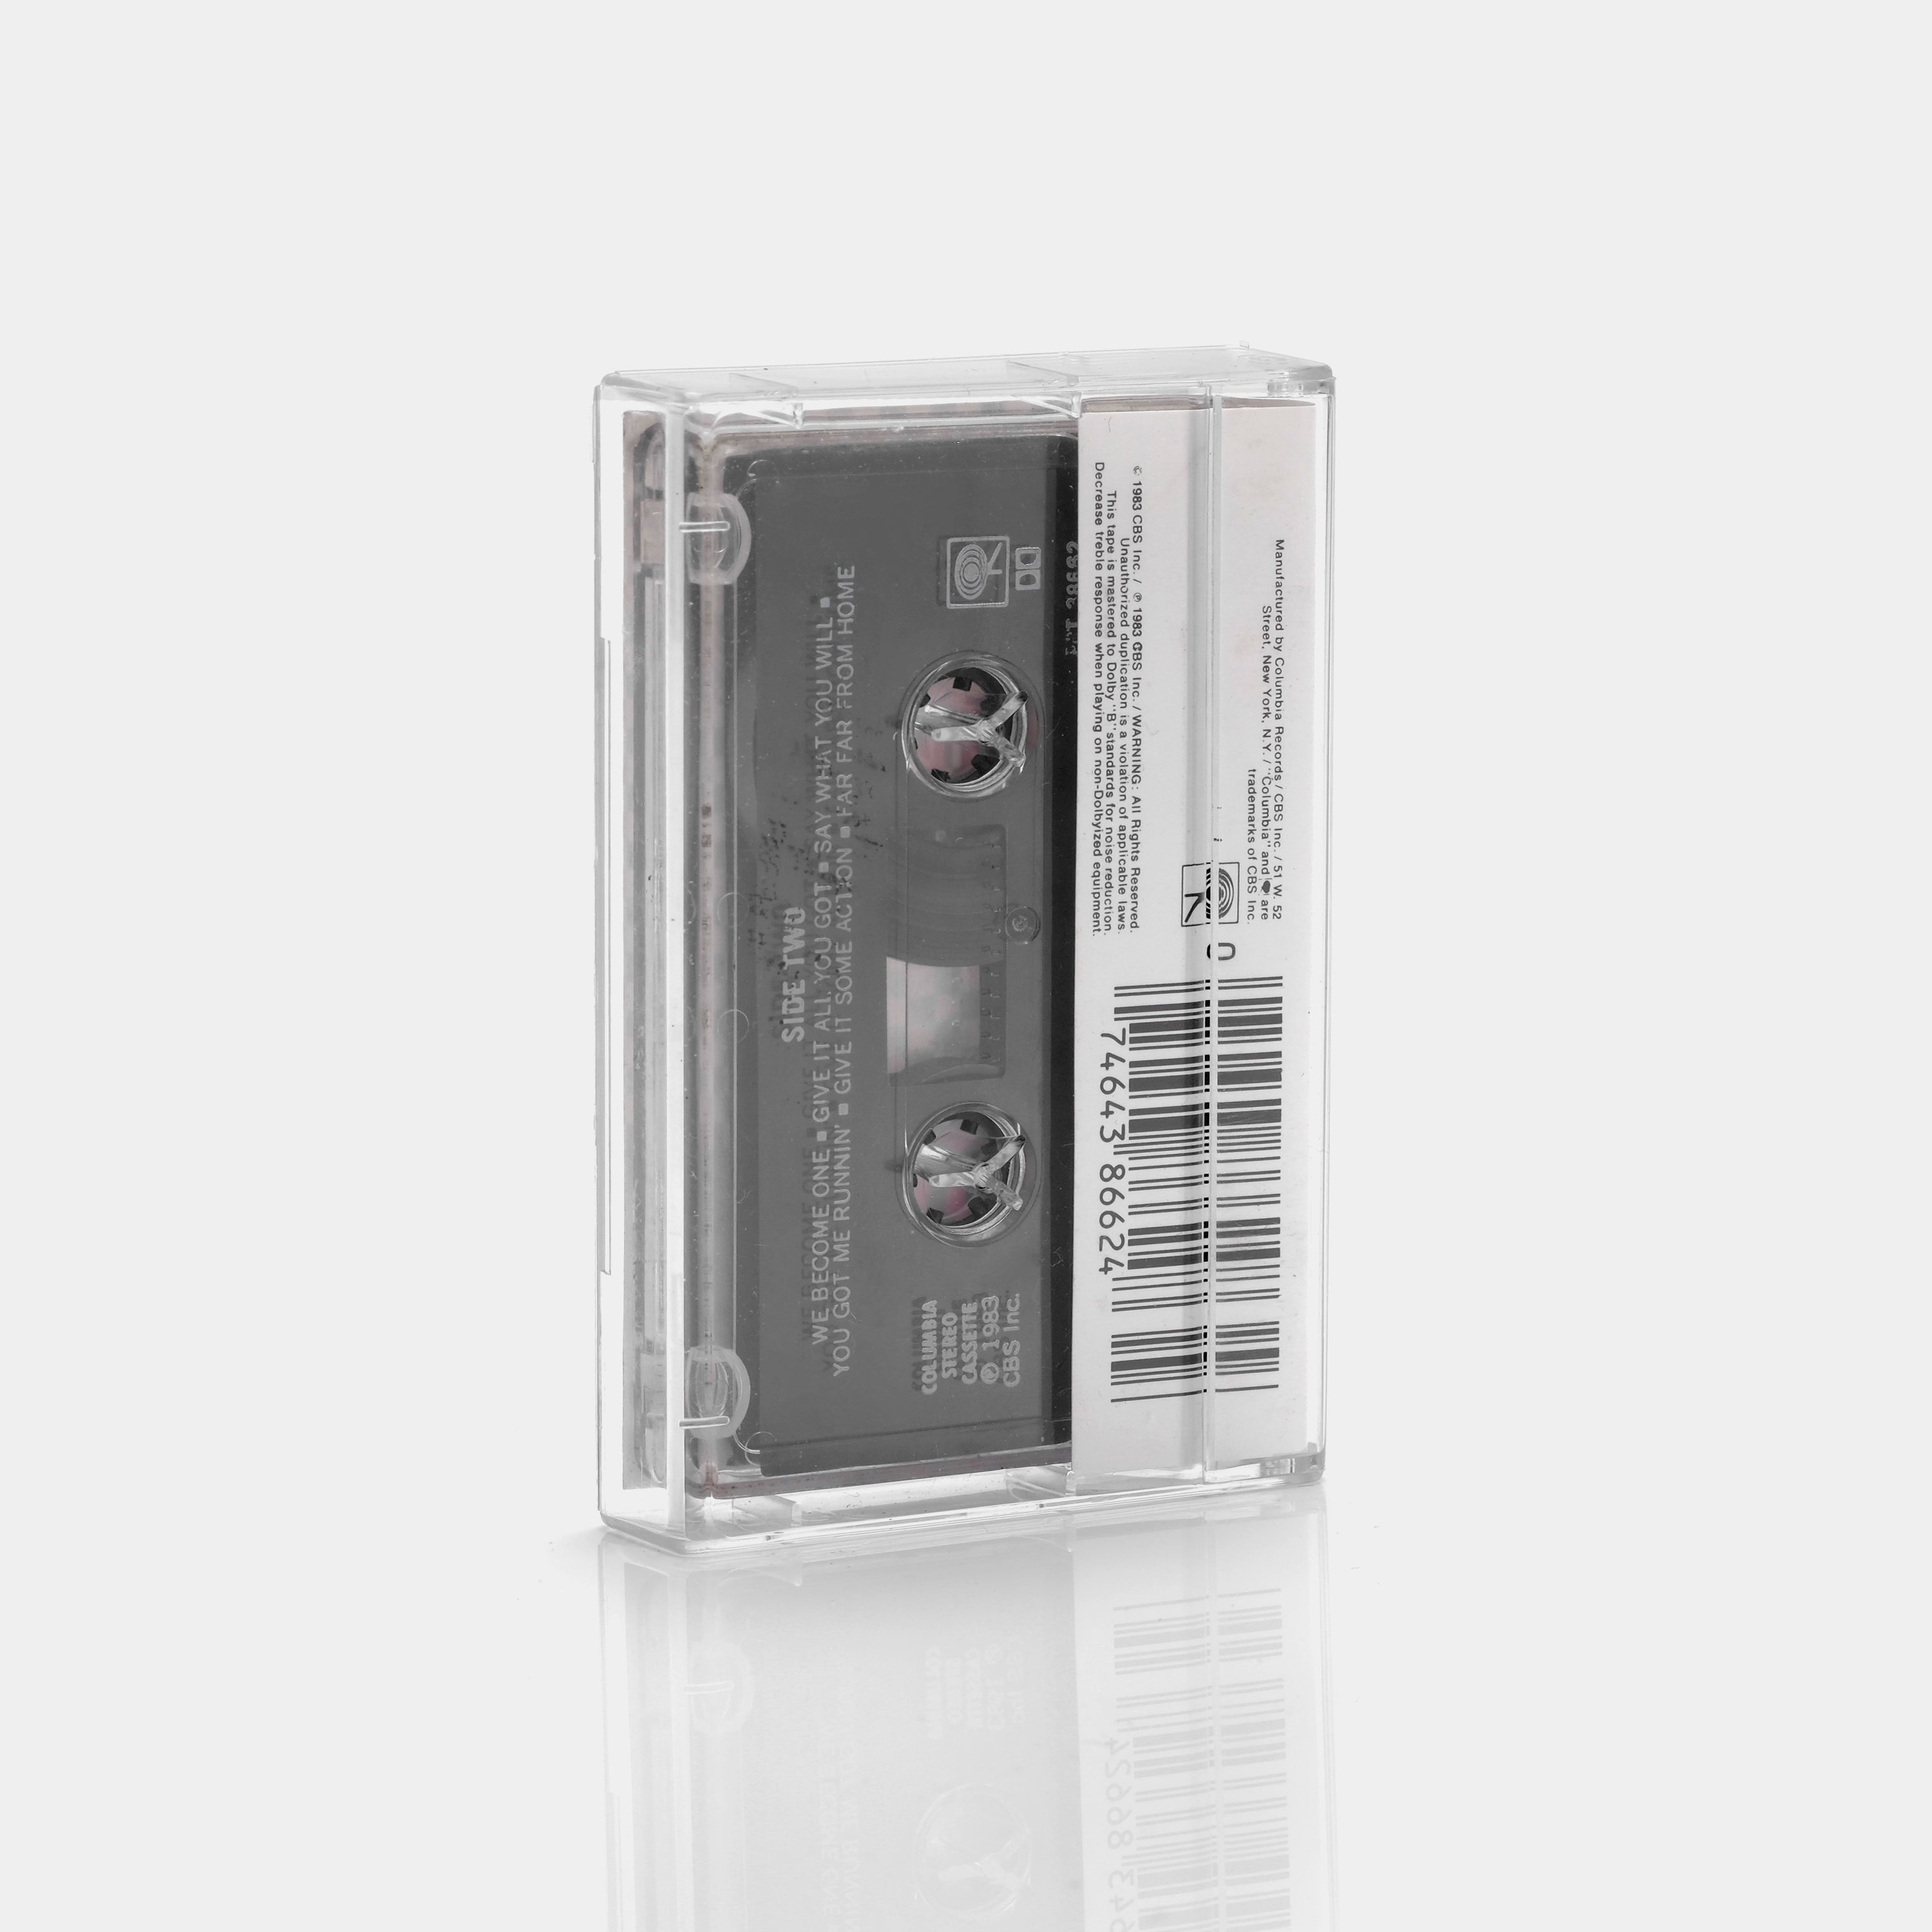 Fastway - Fastway Cassette Tape